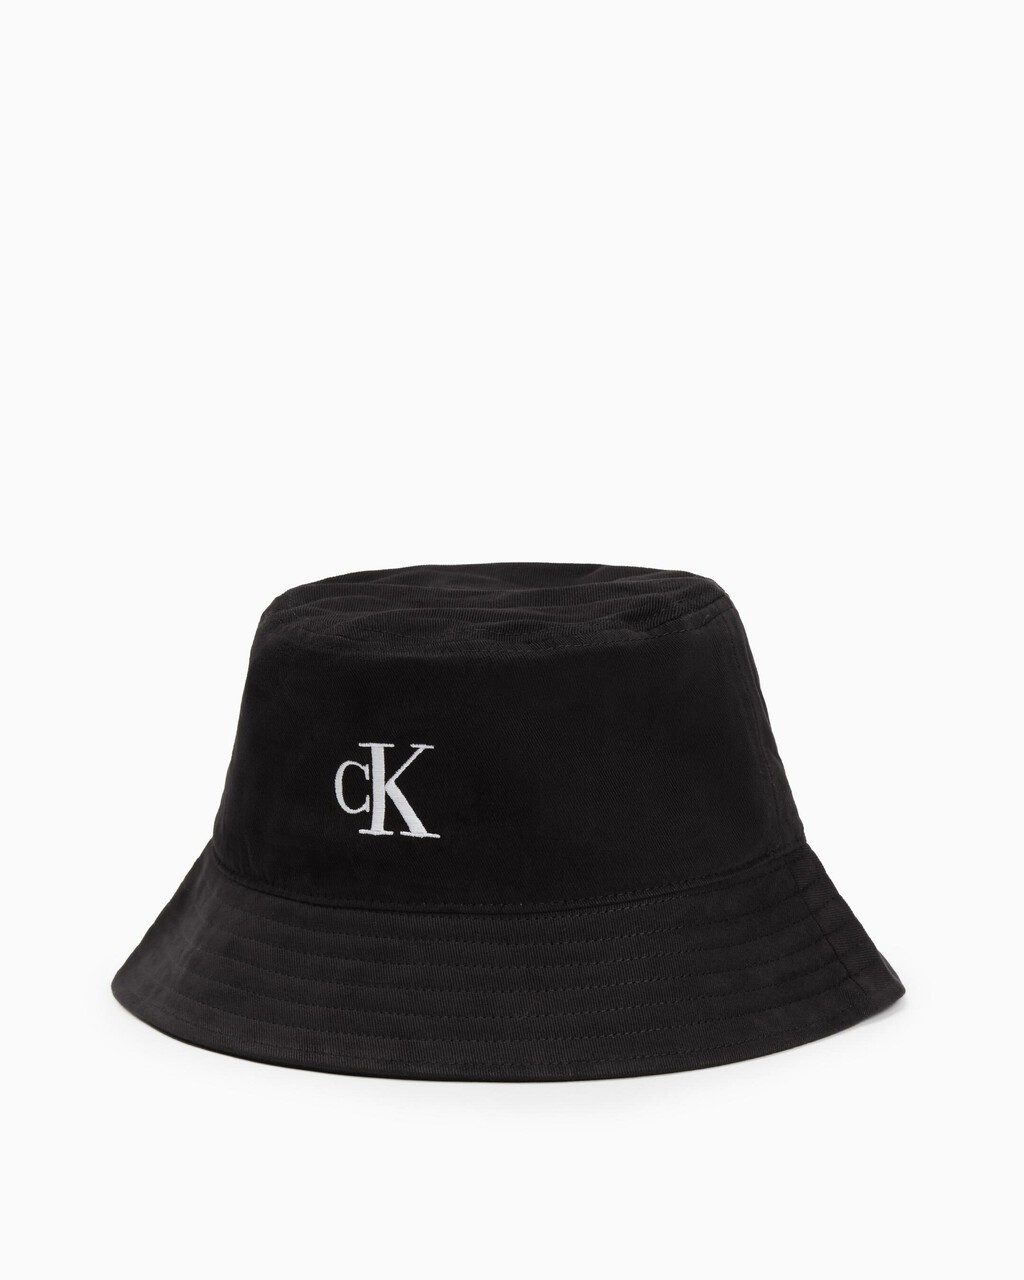 CK MONOGRAM 棉質漁夫帽, BLACK, hi-res